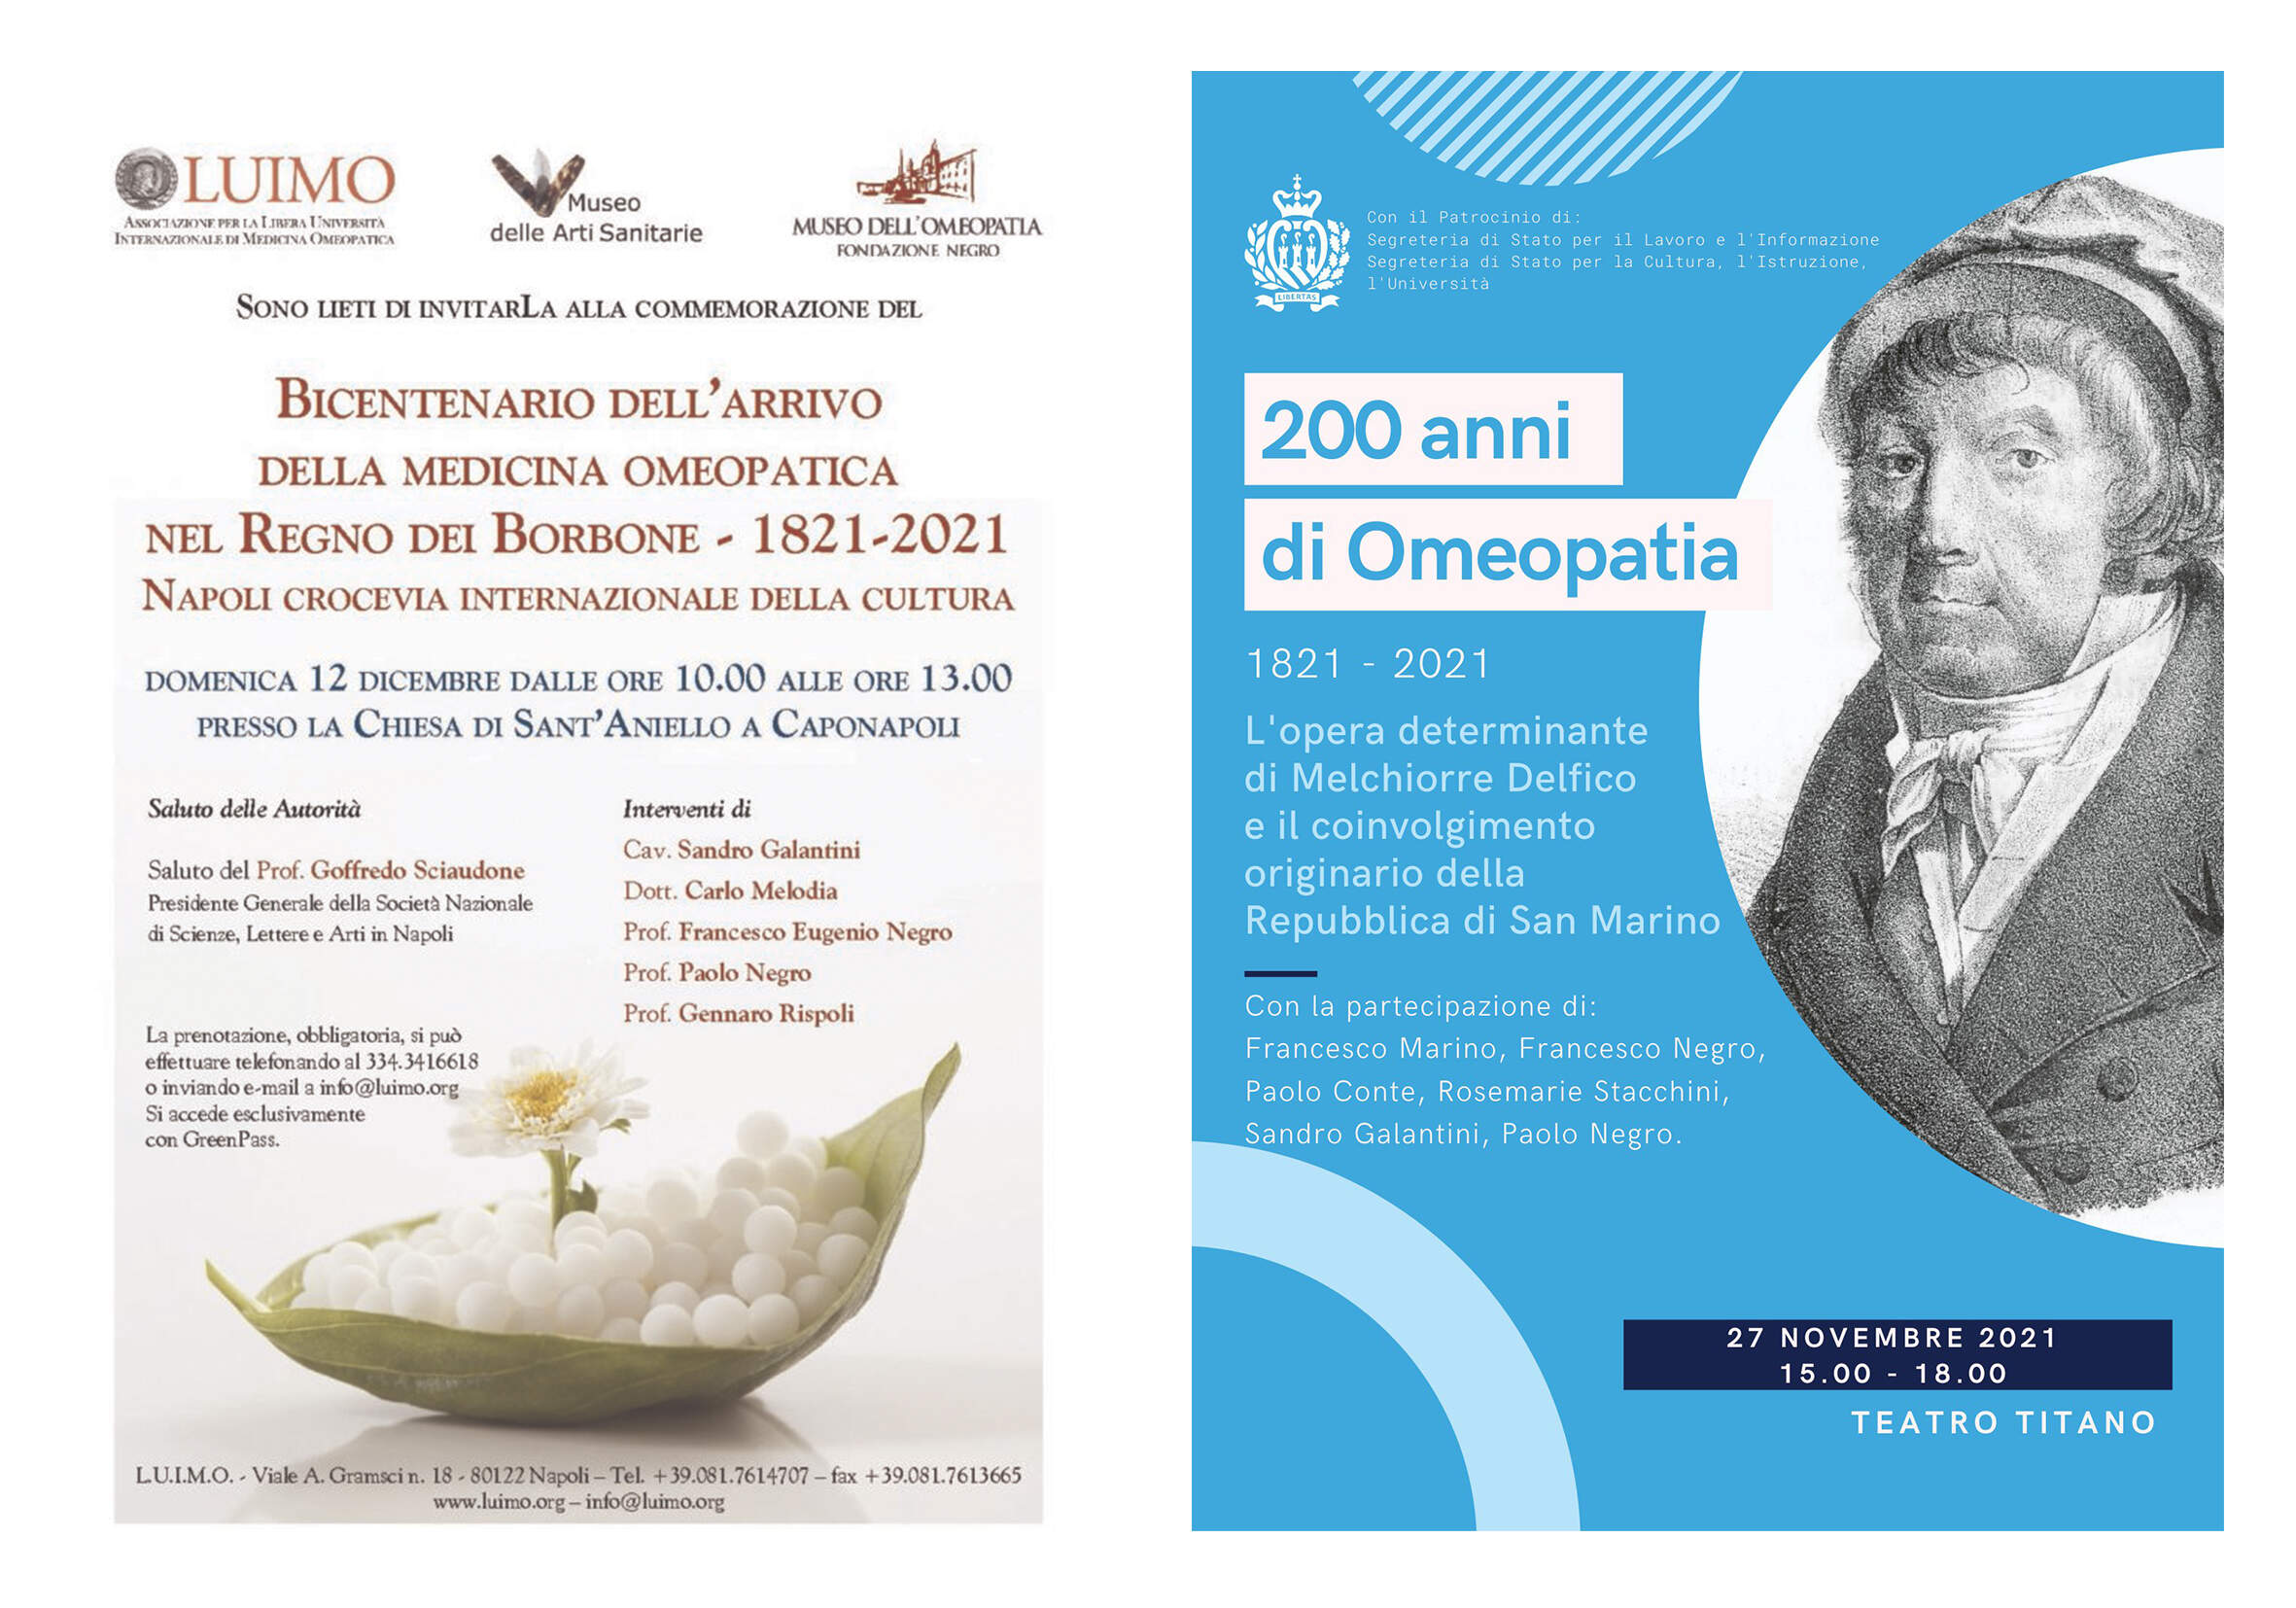 1821 - 2021 Bicentenario dell’omeopatia in Italia